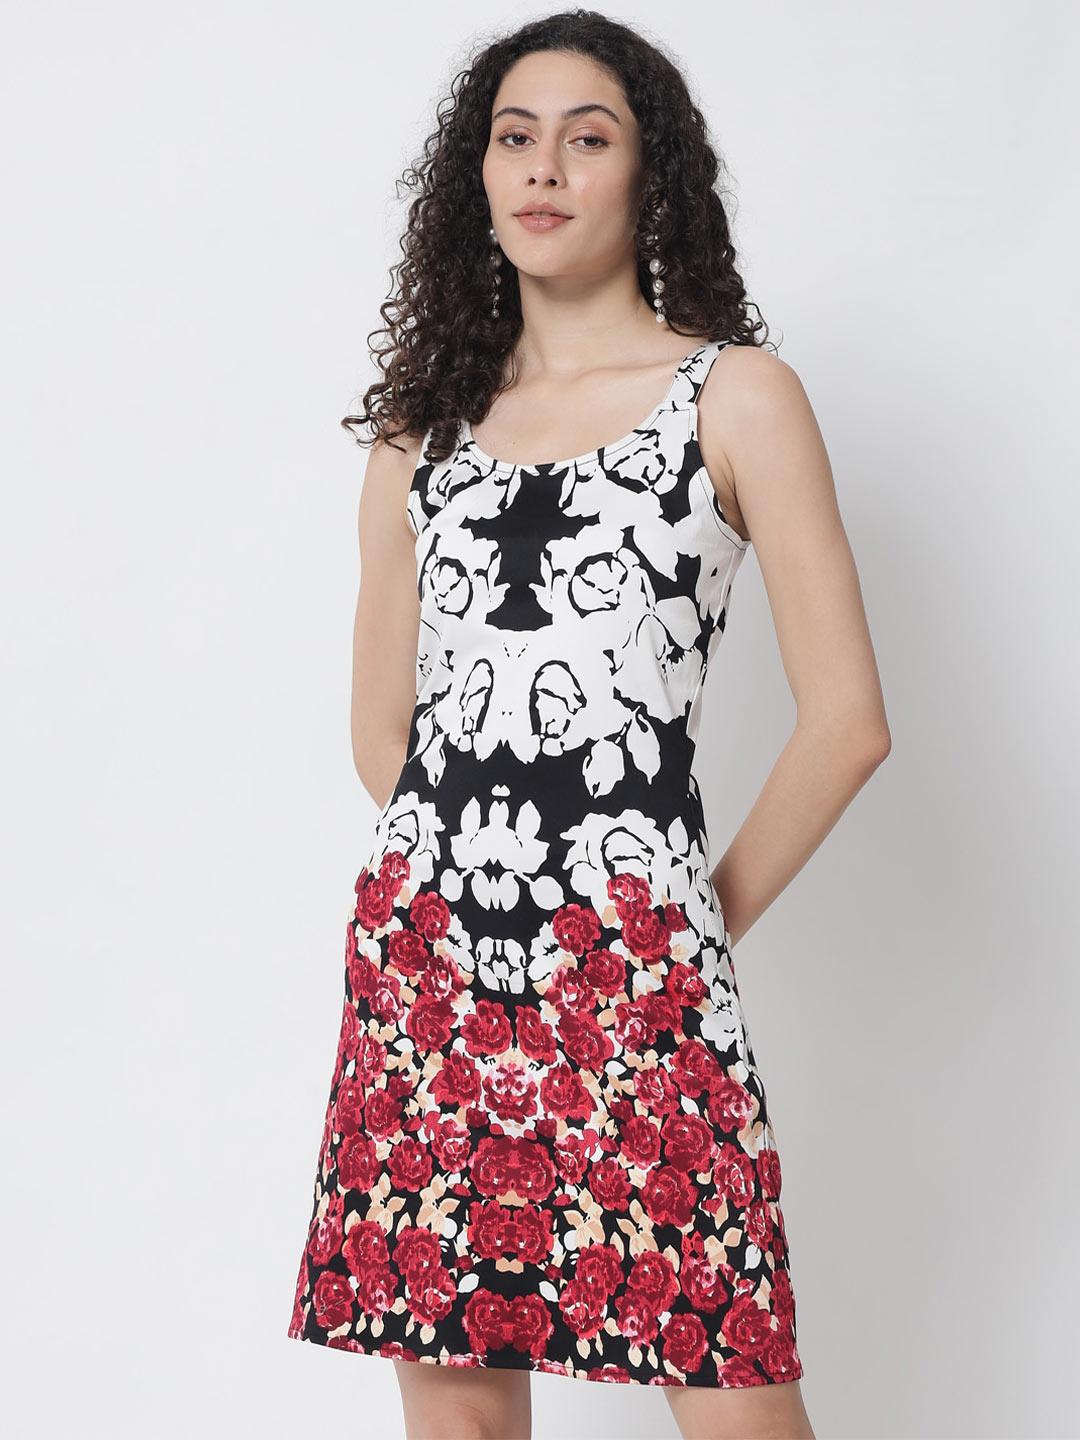 Tulsattva Black Floral Print Sheath Dress